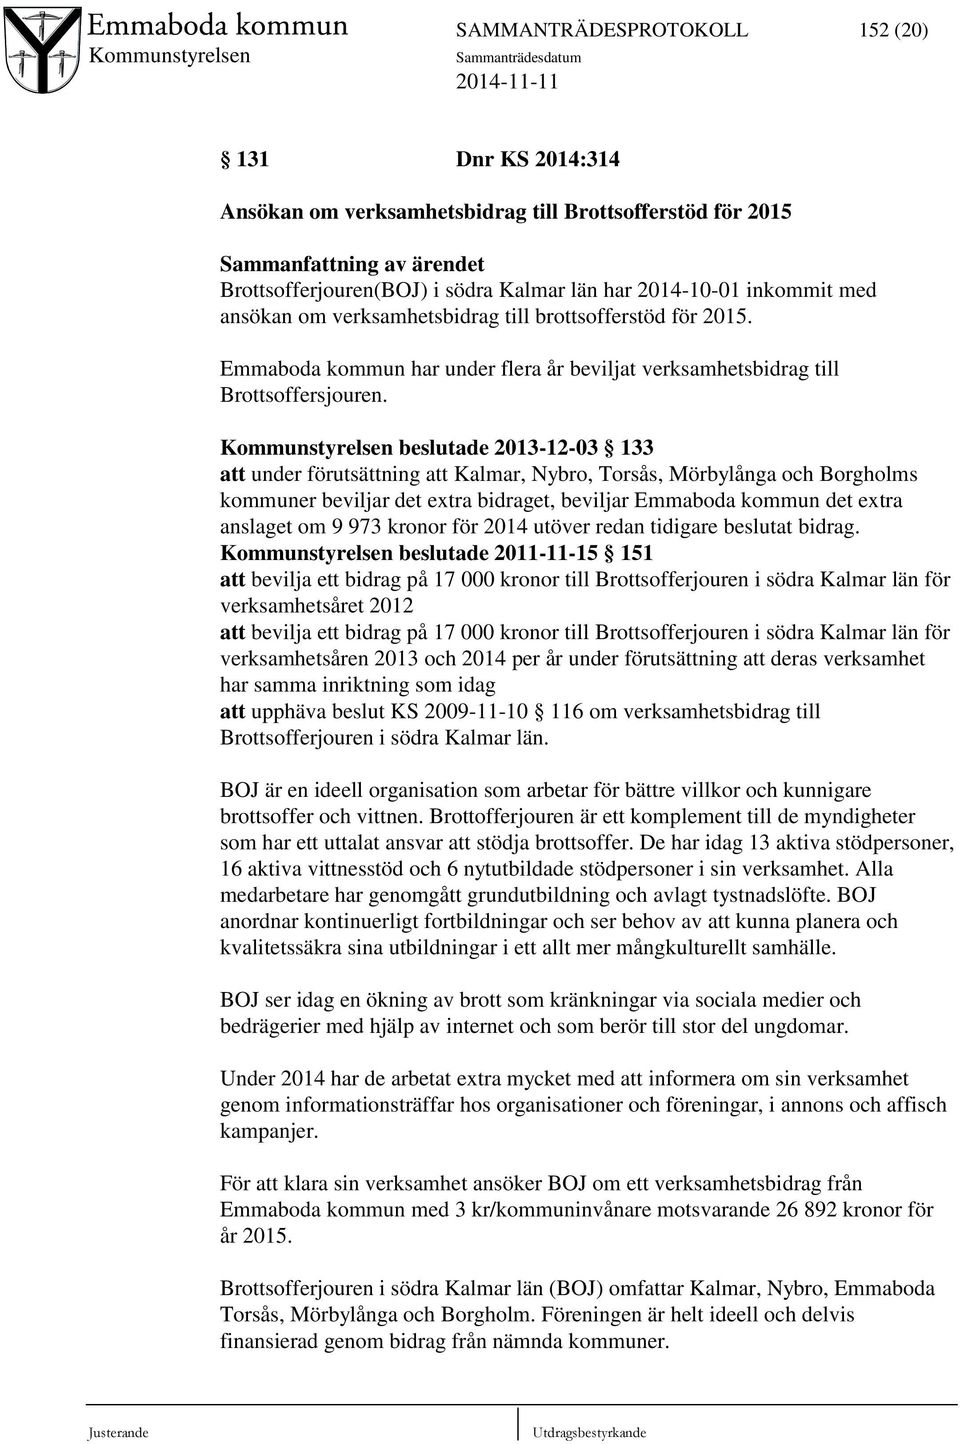 Kommunstyrelsen beslutade 2013-12-03 133 att under förutsättning att Kalmar, Nybro, Torsås, Mörbylånga och Borgholms kommuner beviljar det extra bidraget, beviljar Emmaboda kommun det extra anslaget